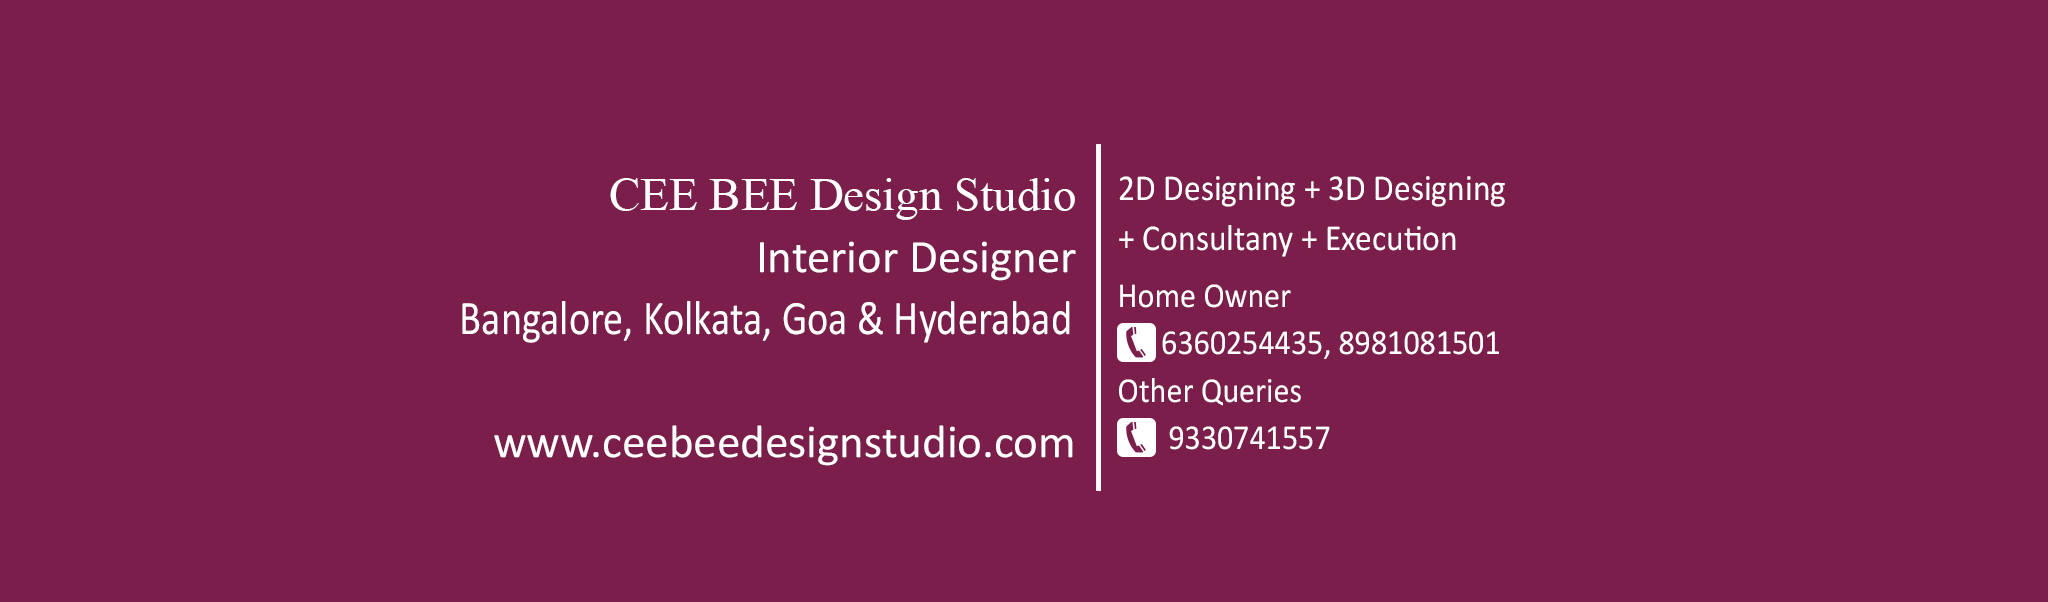 CeeBee Design Studio